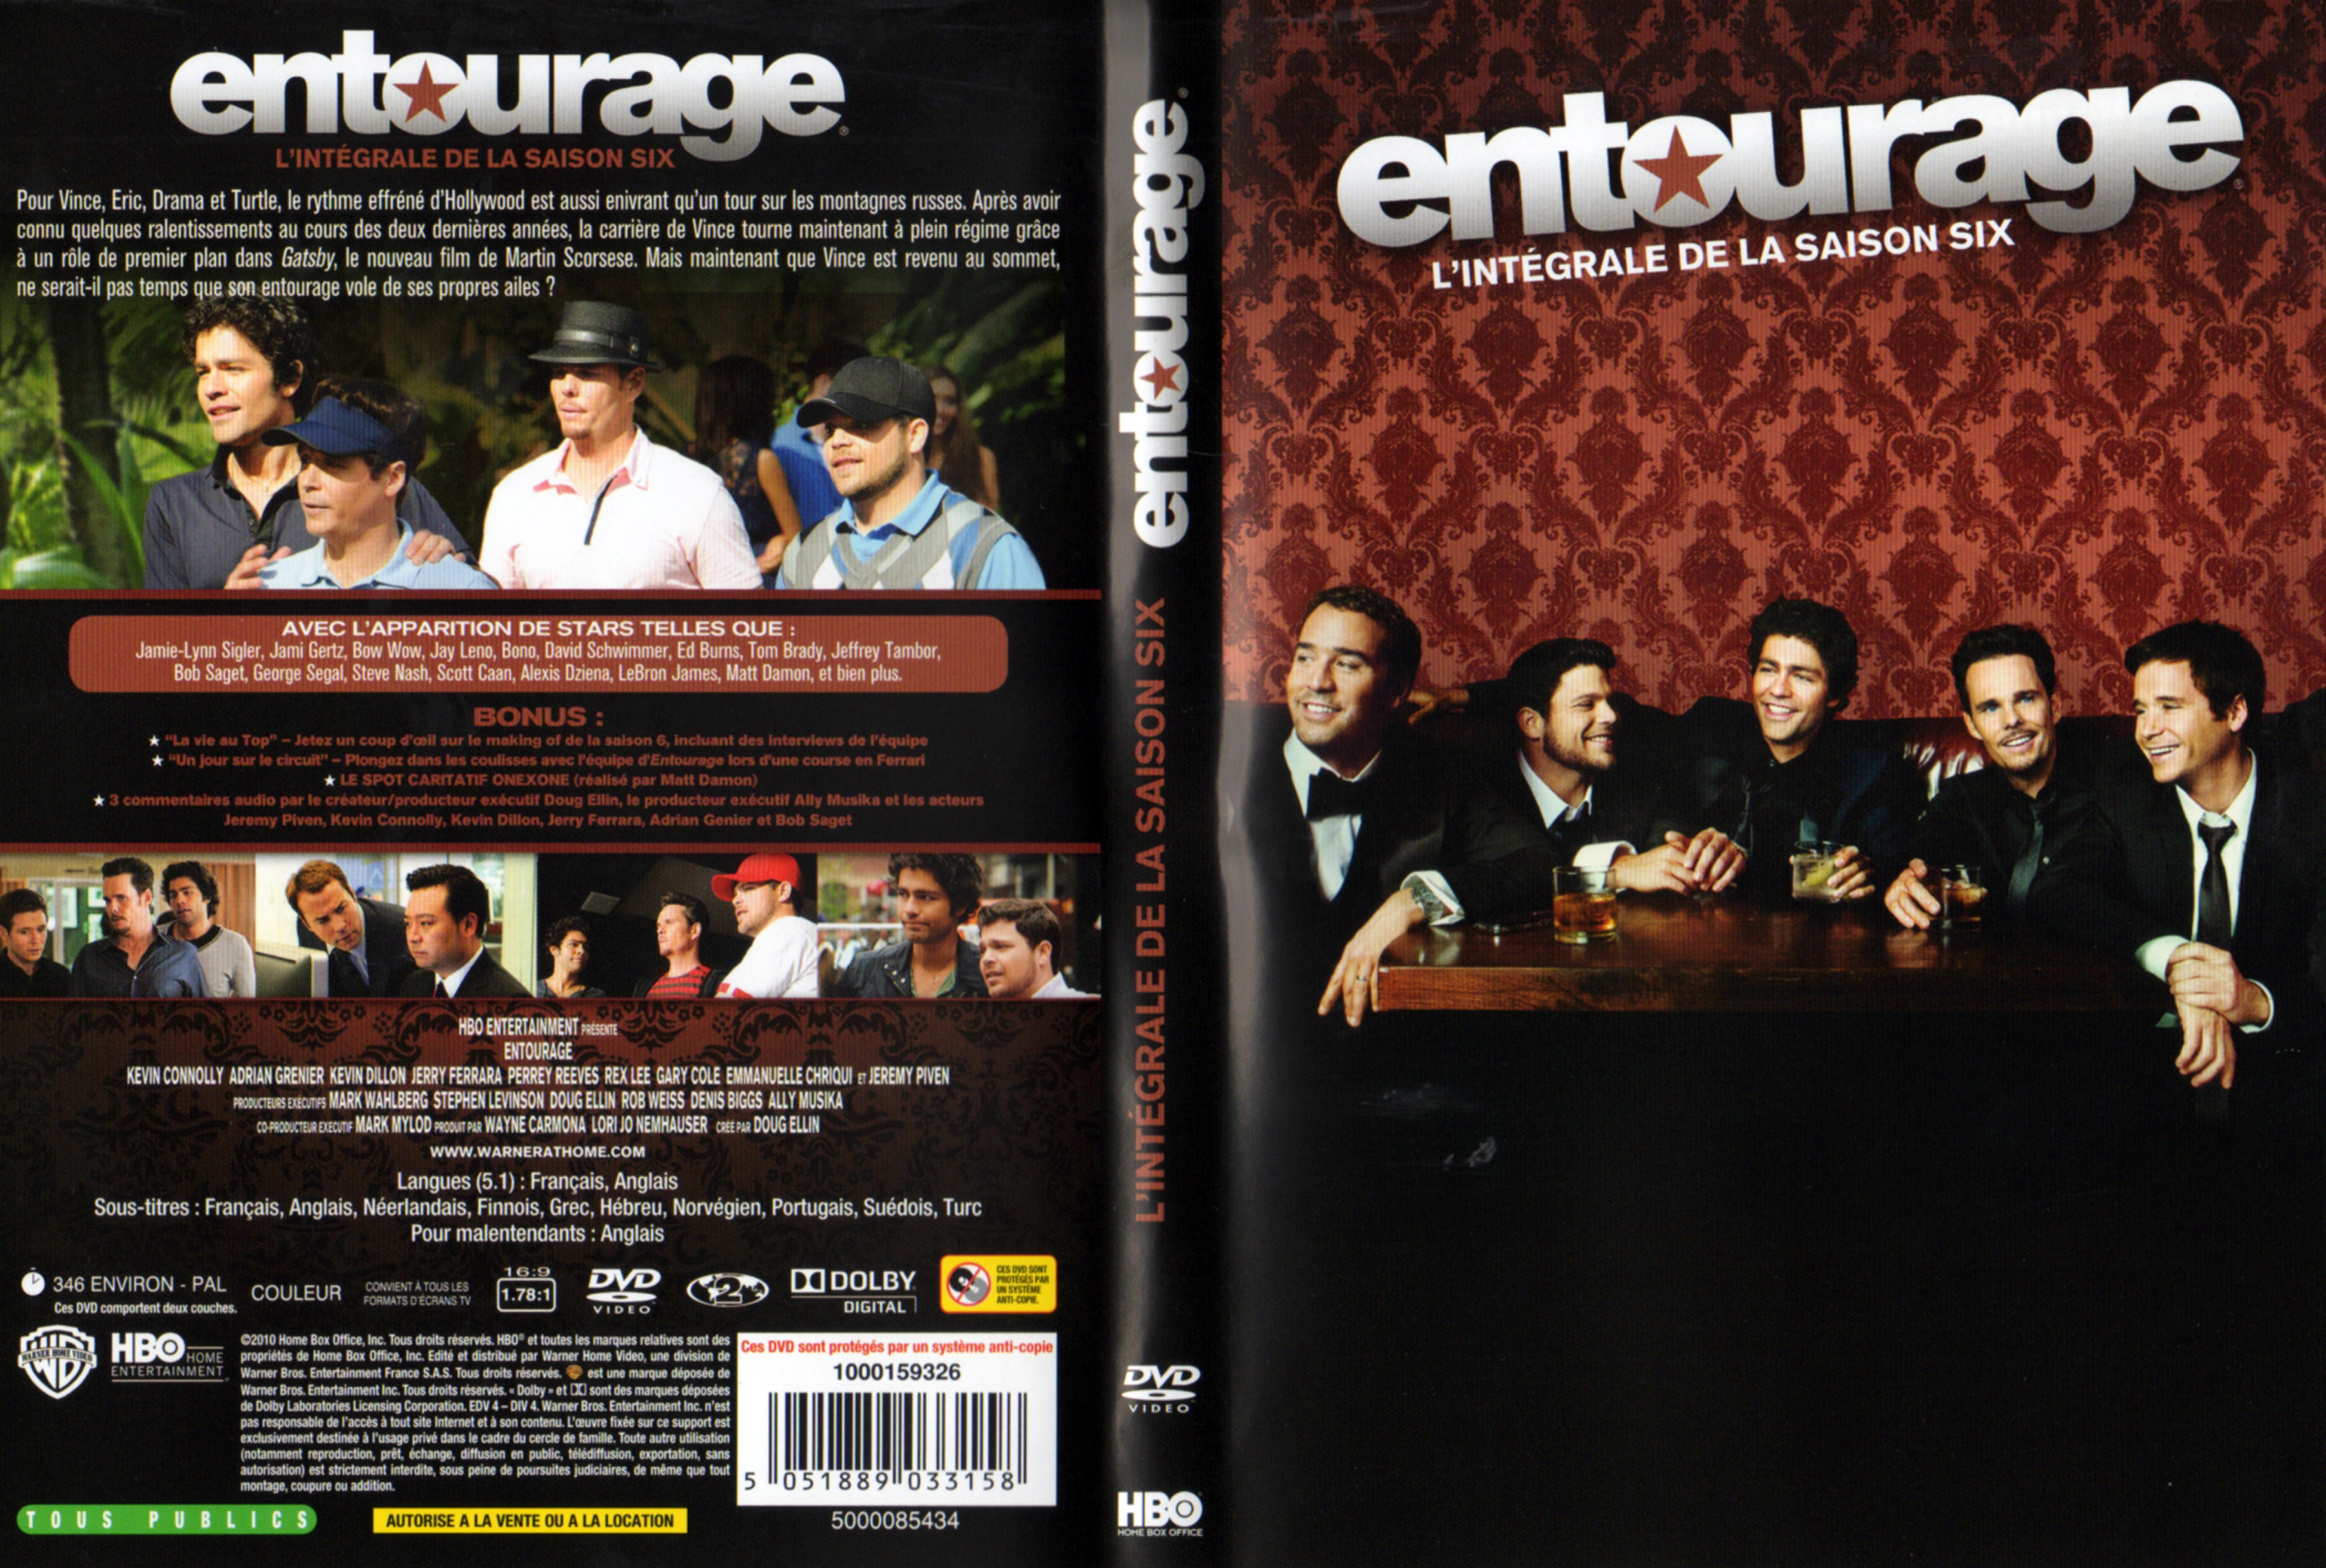 Jaquette DVD Entourage Saison 6